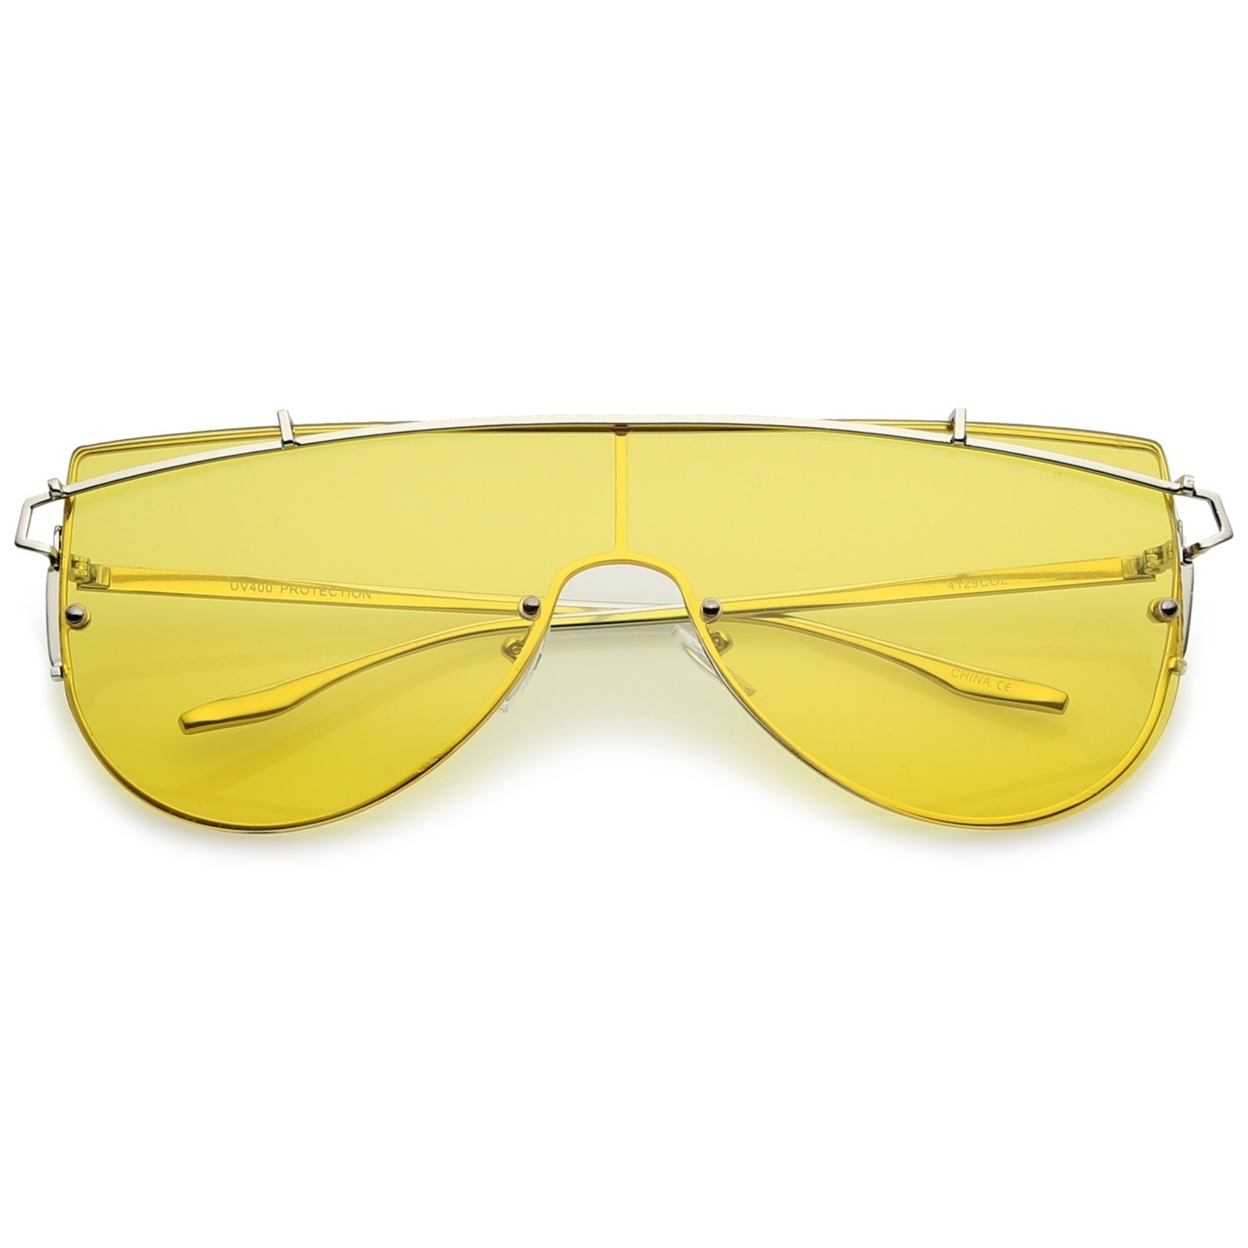 Futuristic Rimless Metal Crossbar Colored Mono Lens Shield Sunglasses 62mm - Silver / Blue